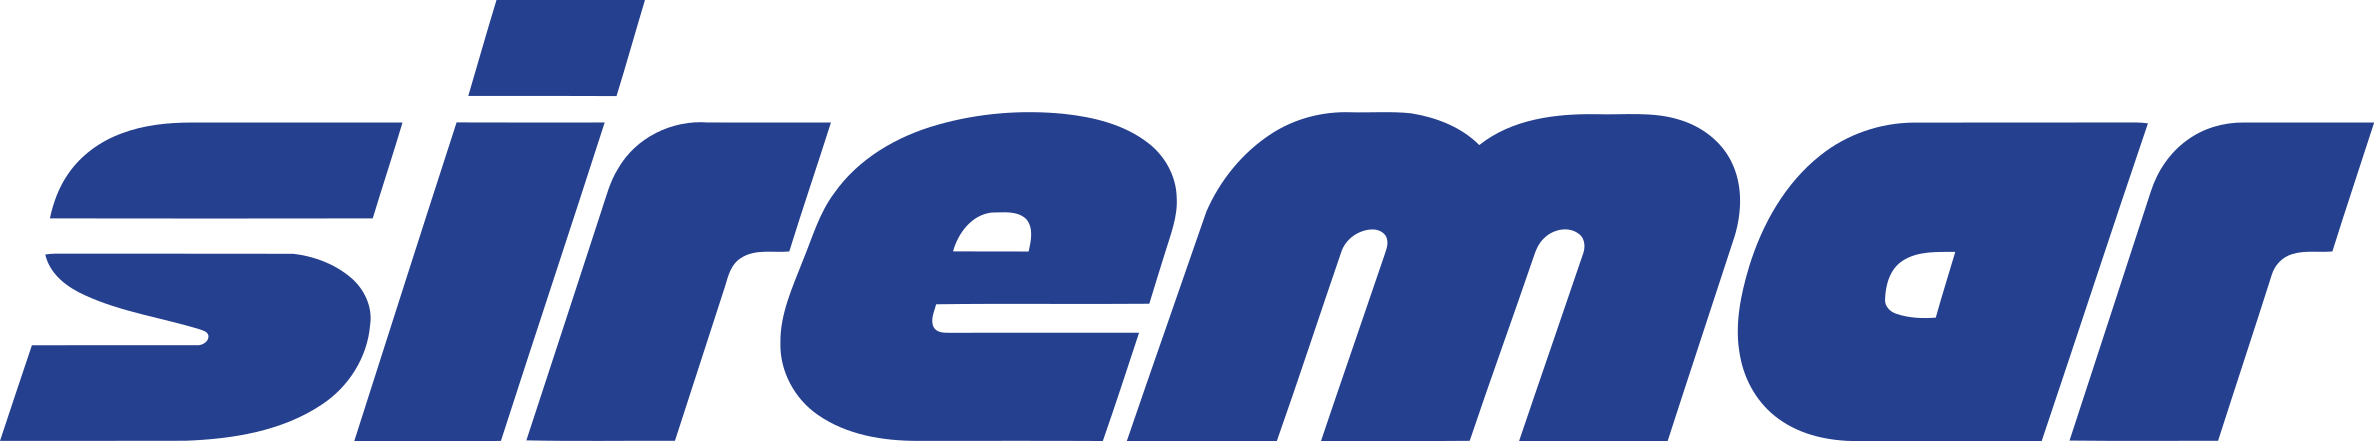 Logo_Siremar